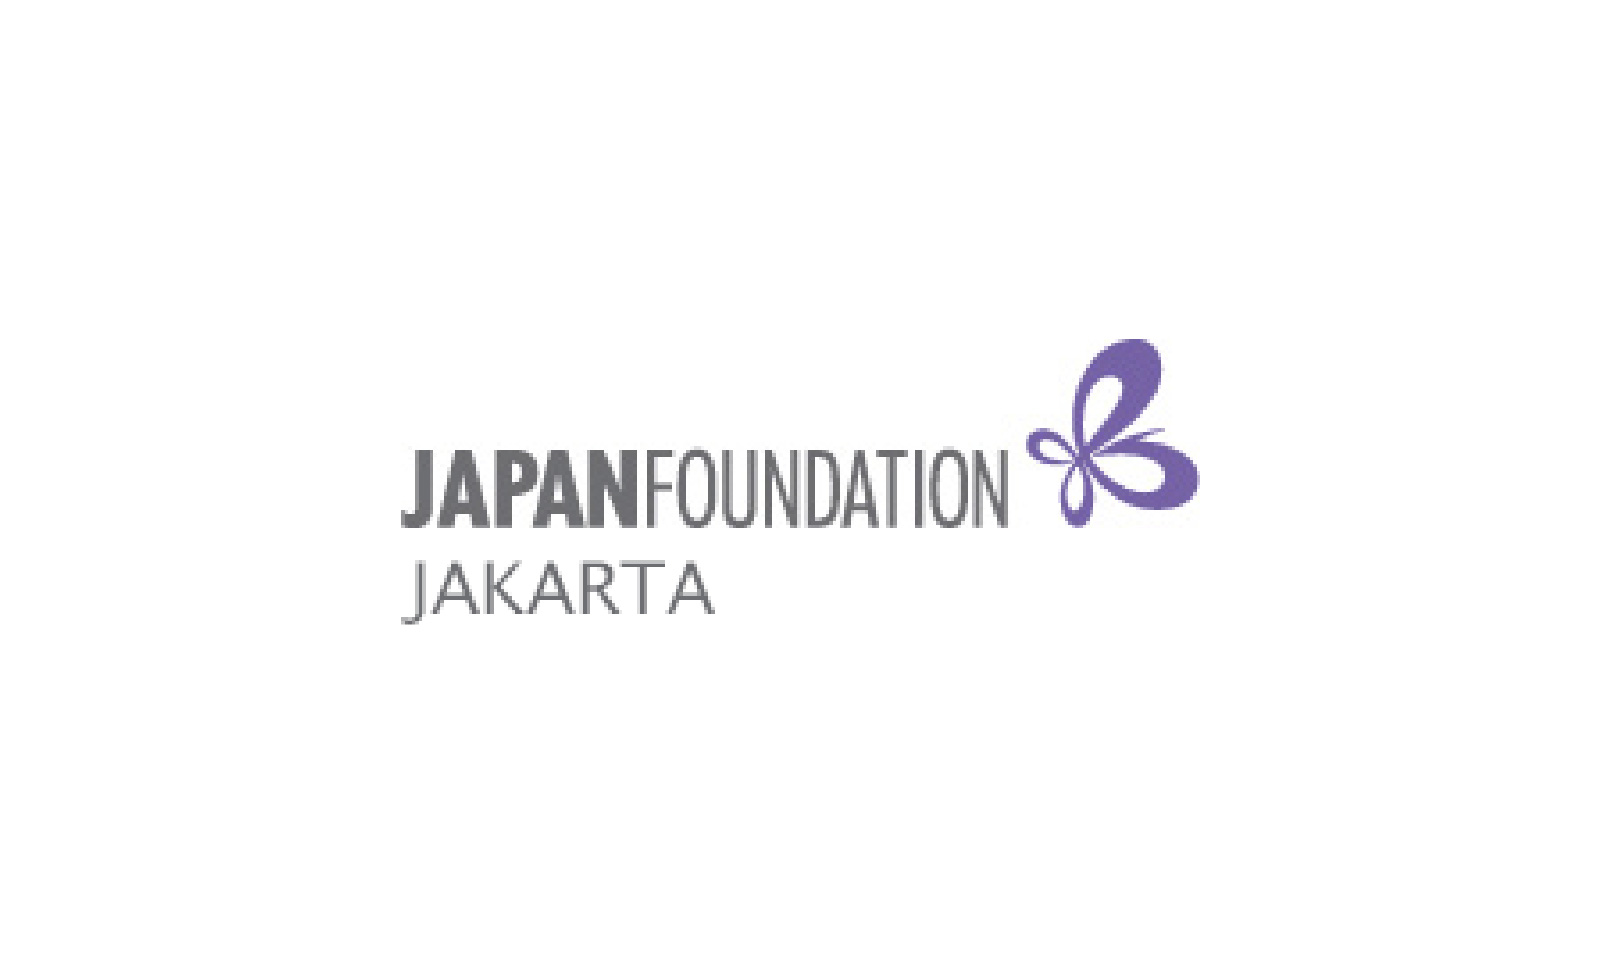 Japan Foundation Jakarta 02